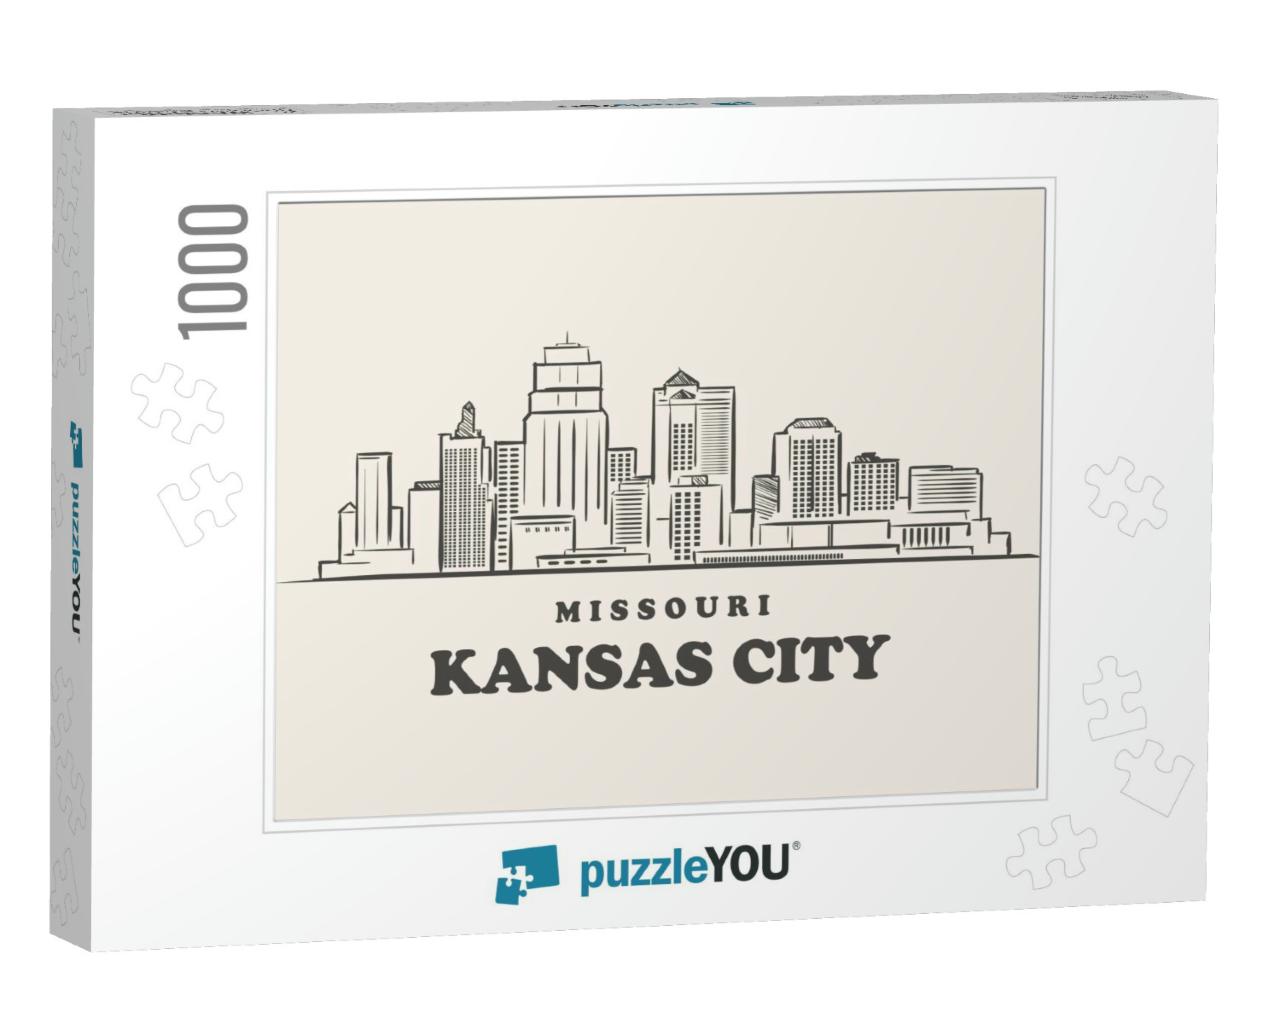 Kansas City Skyline, Missouri Drawn Sketch... Jigsaw Puzzle with 1000 pieces